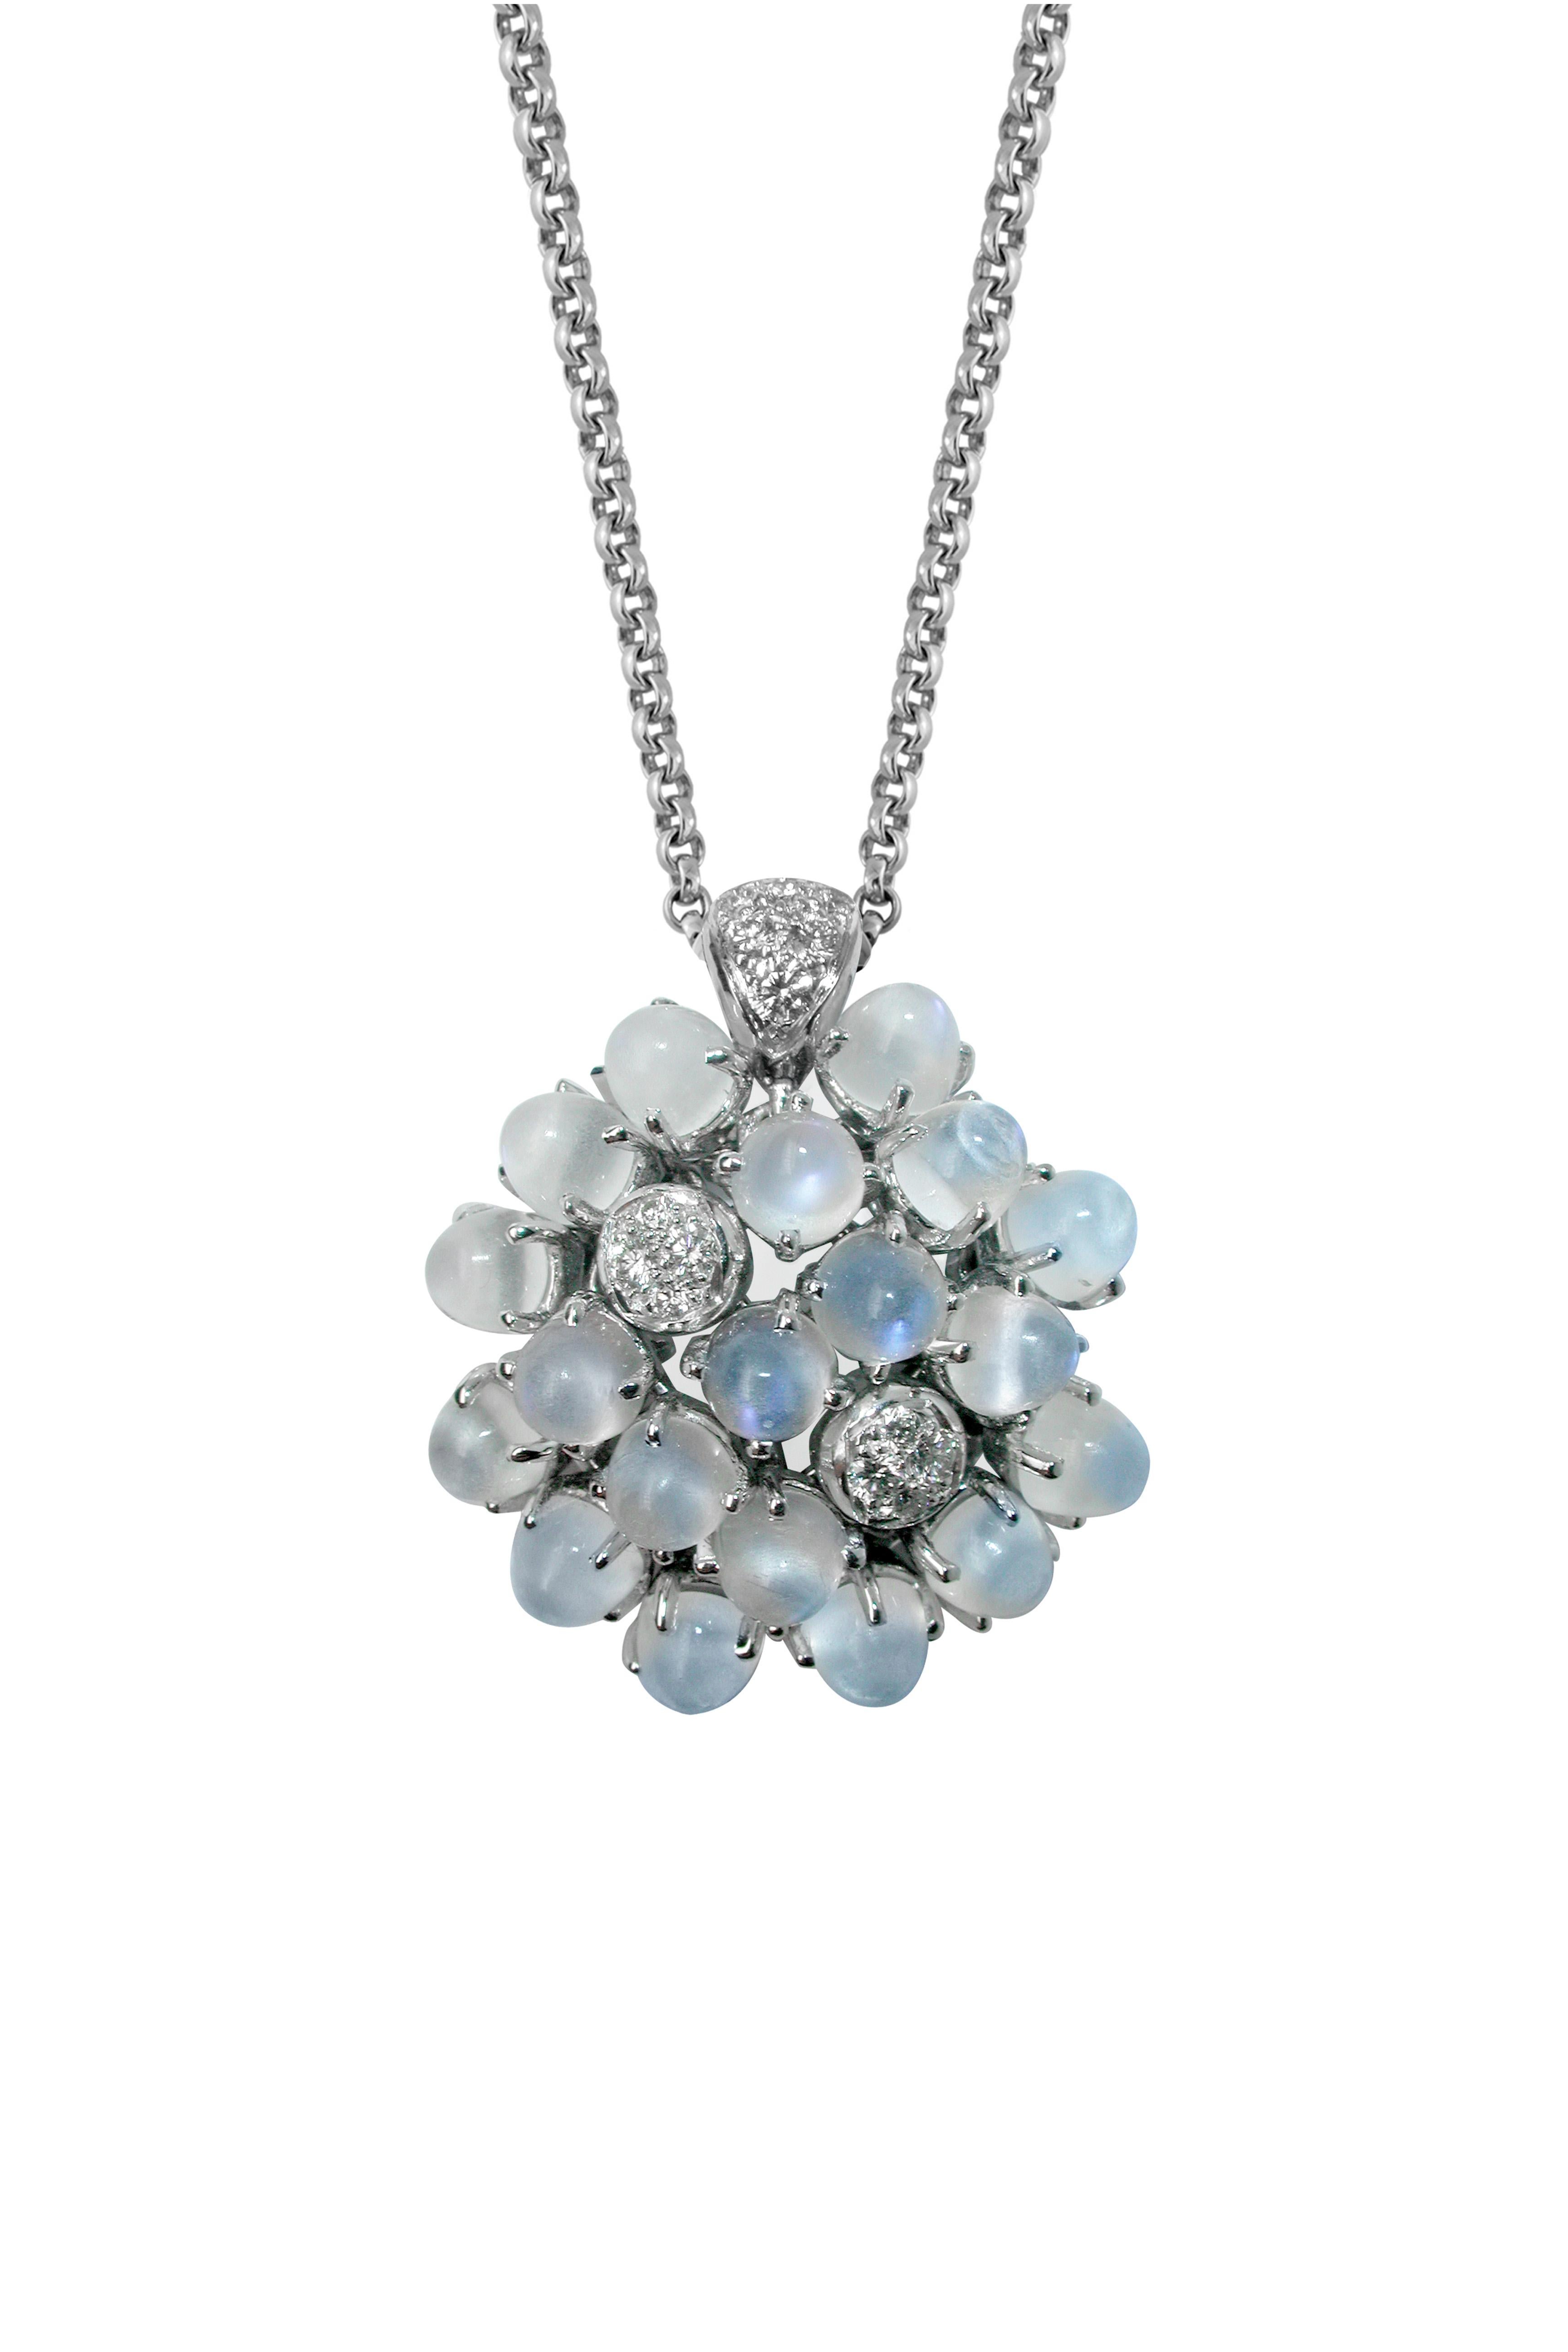 Cabochon Mathon Paris Moonstones, Diamonds and White Gold necklace For Sale